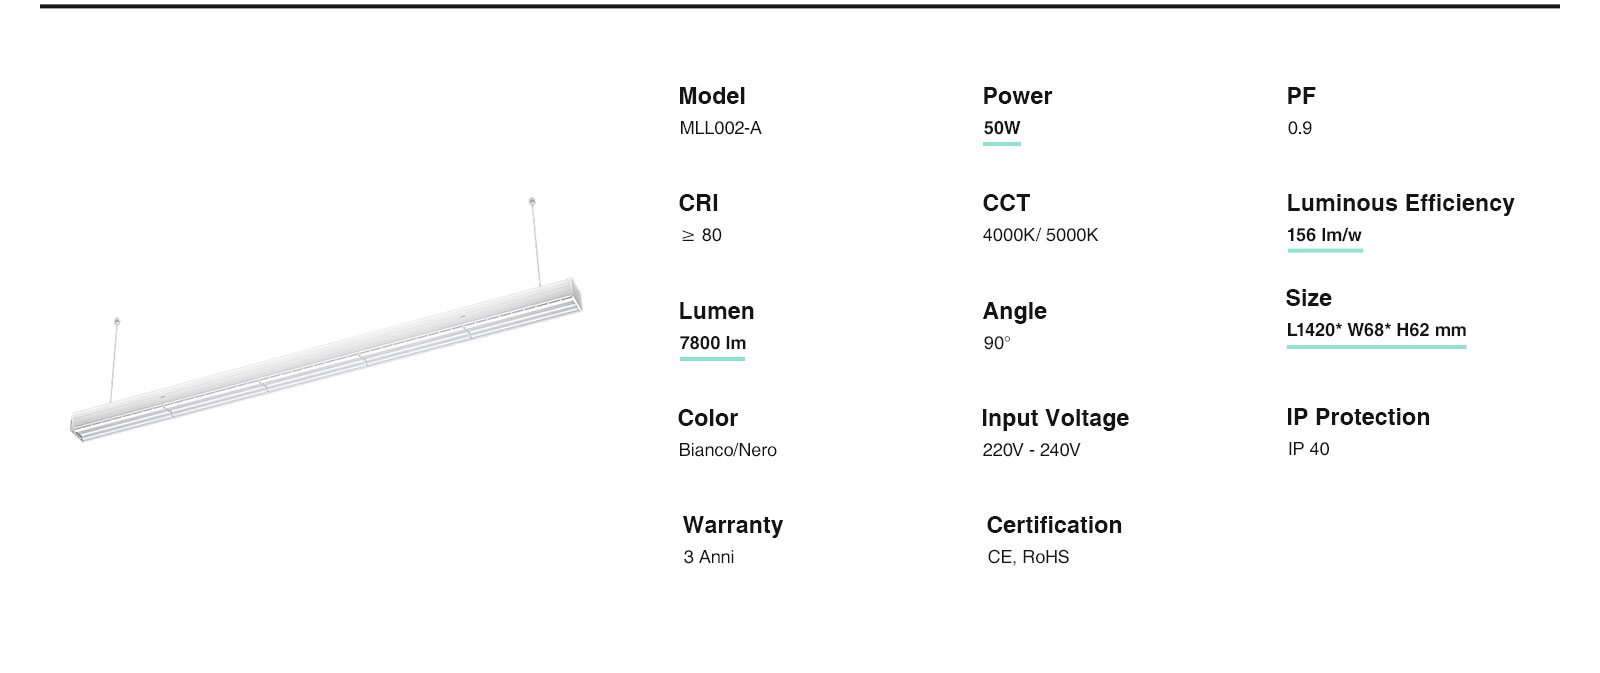 MLL002-A Canalina a 5 fili per luci lineari a LED 5 anni di garanzia-Luci lineari--ML00202